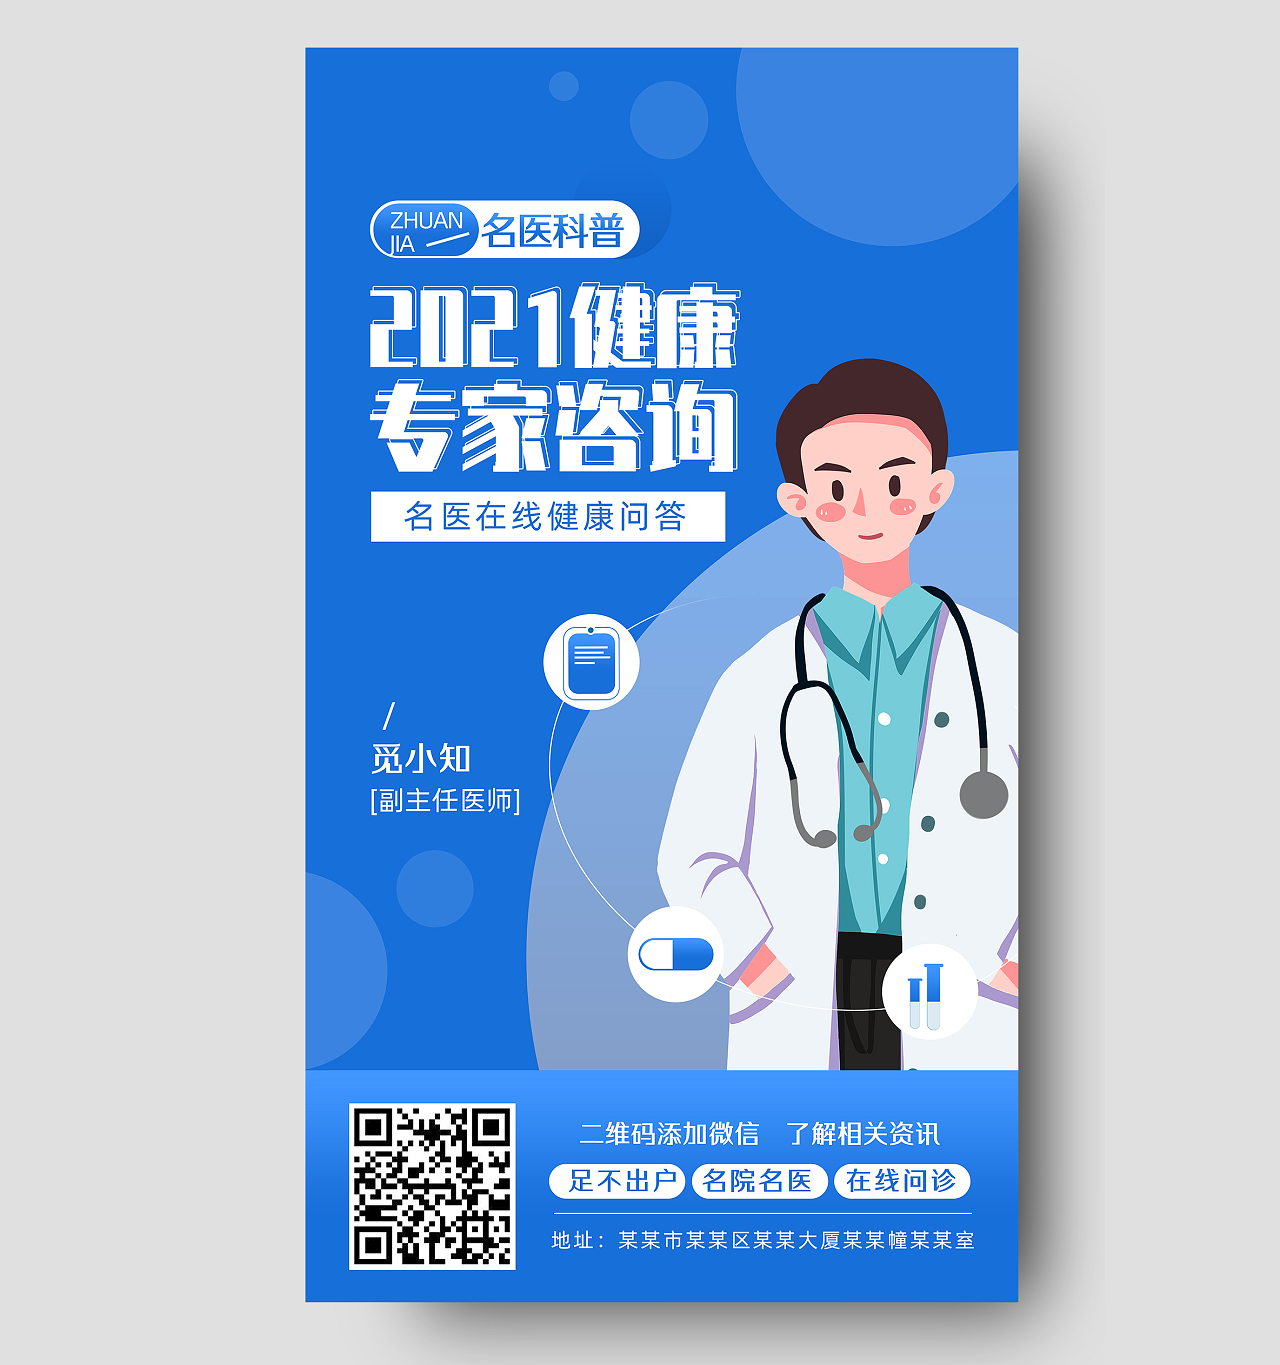 蓝色商务简约2021健康专家咨询专家讲座手机海报UI